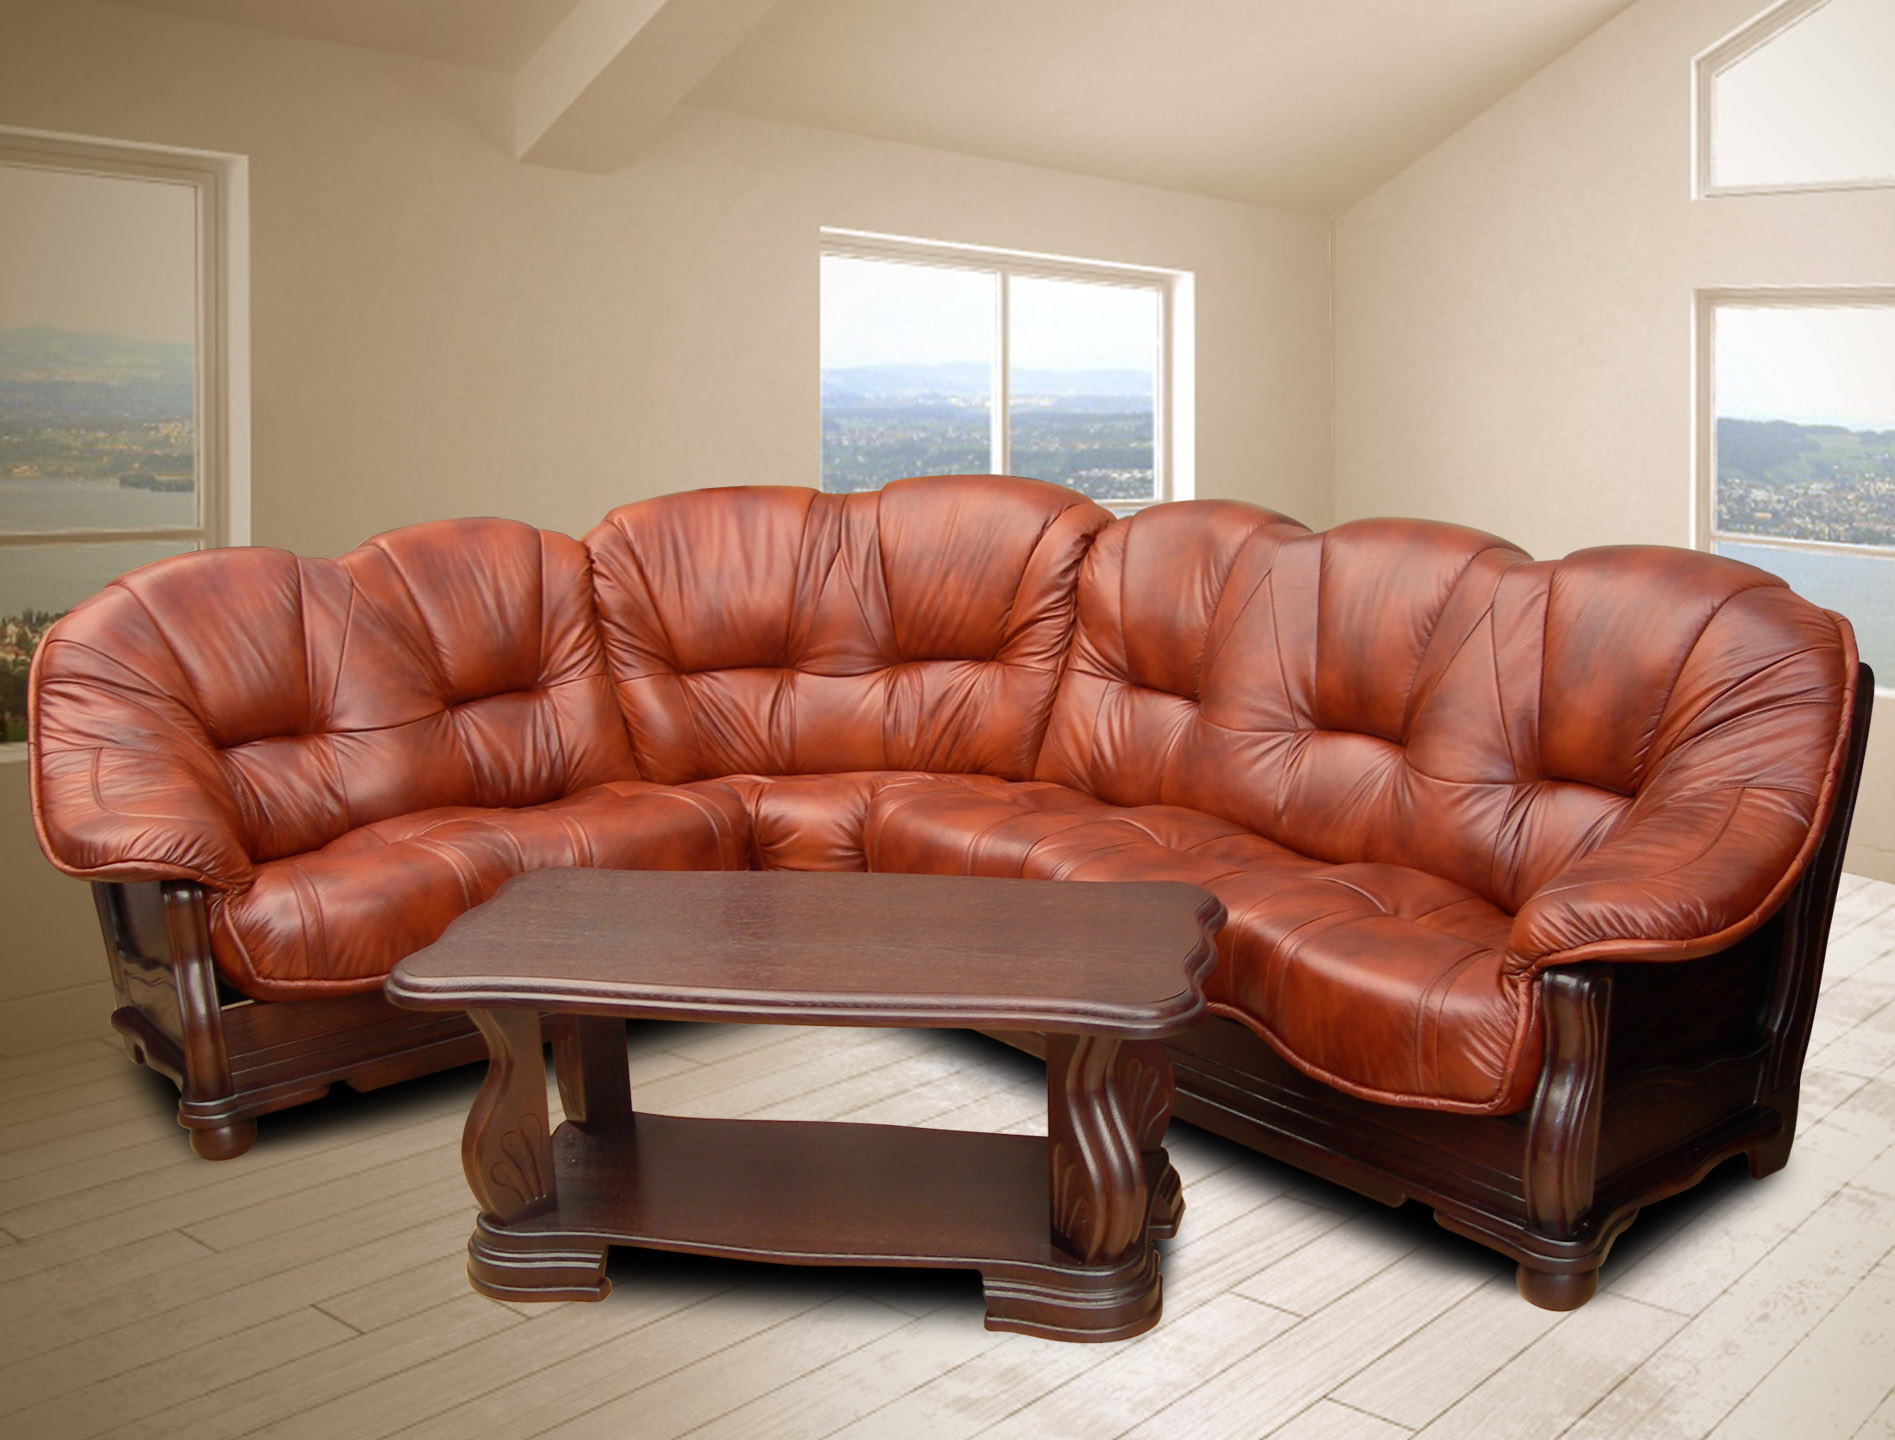 Мебель кожаные диваны. Кожаный мягкий уголок. Кожаная мягкая мебель. Мягкий кожаный диван. Элитная кожаная мебель.